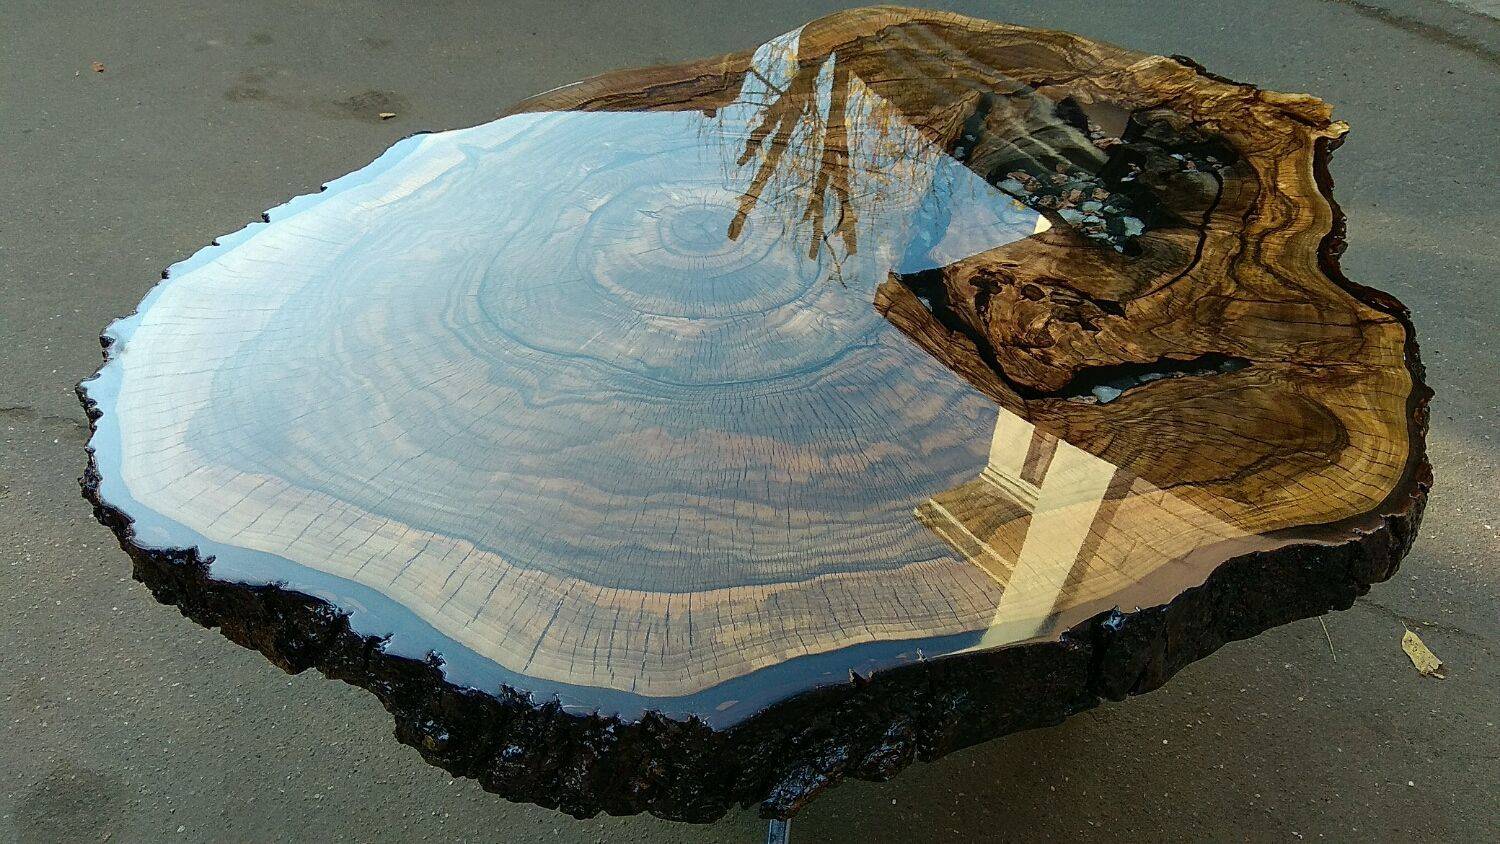 Изготовление стола из эпоксидной смолы и дерева своими руками